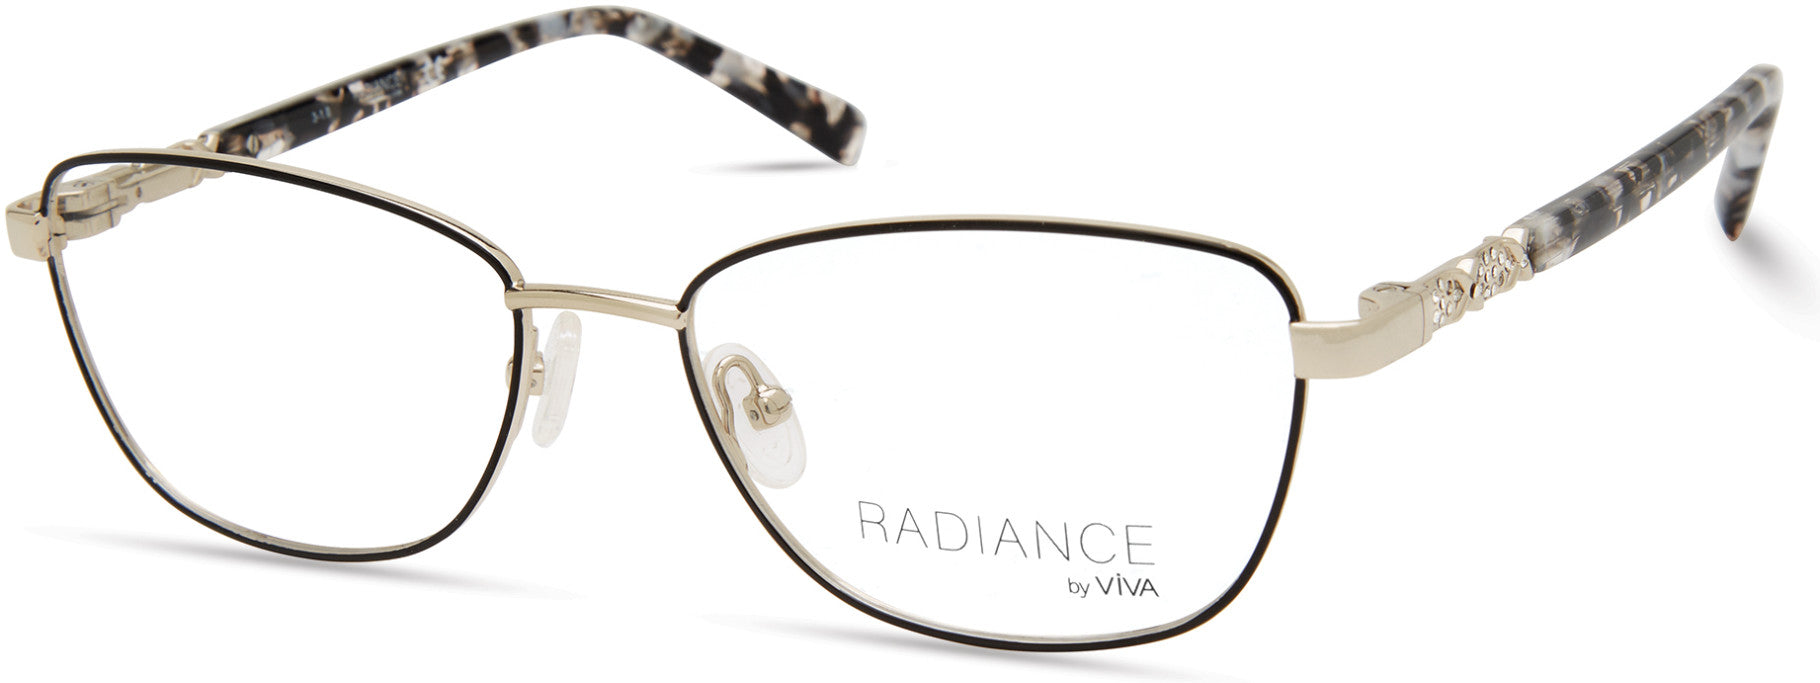 Viva VV8014 Rectangular Eyeglasses 001-001 - Shiny Black